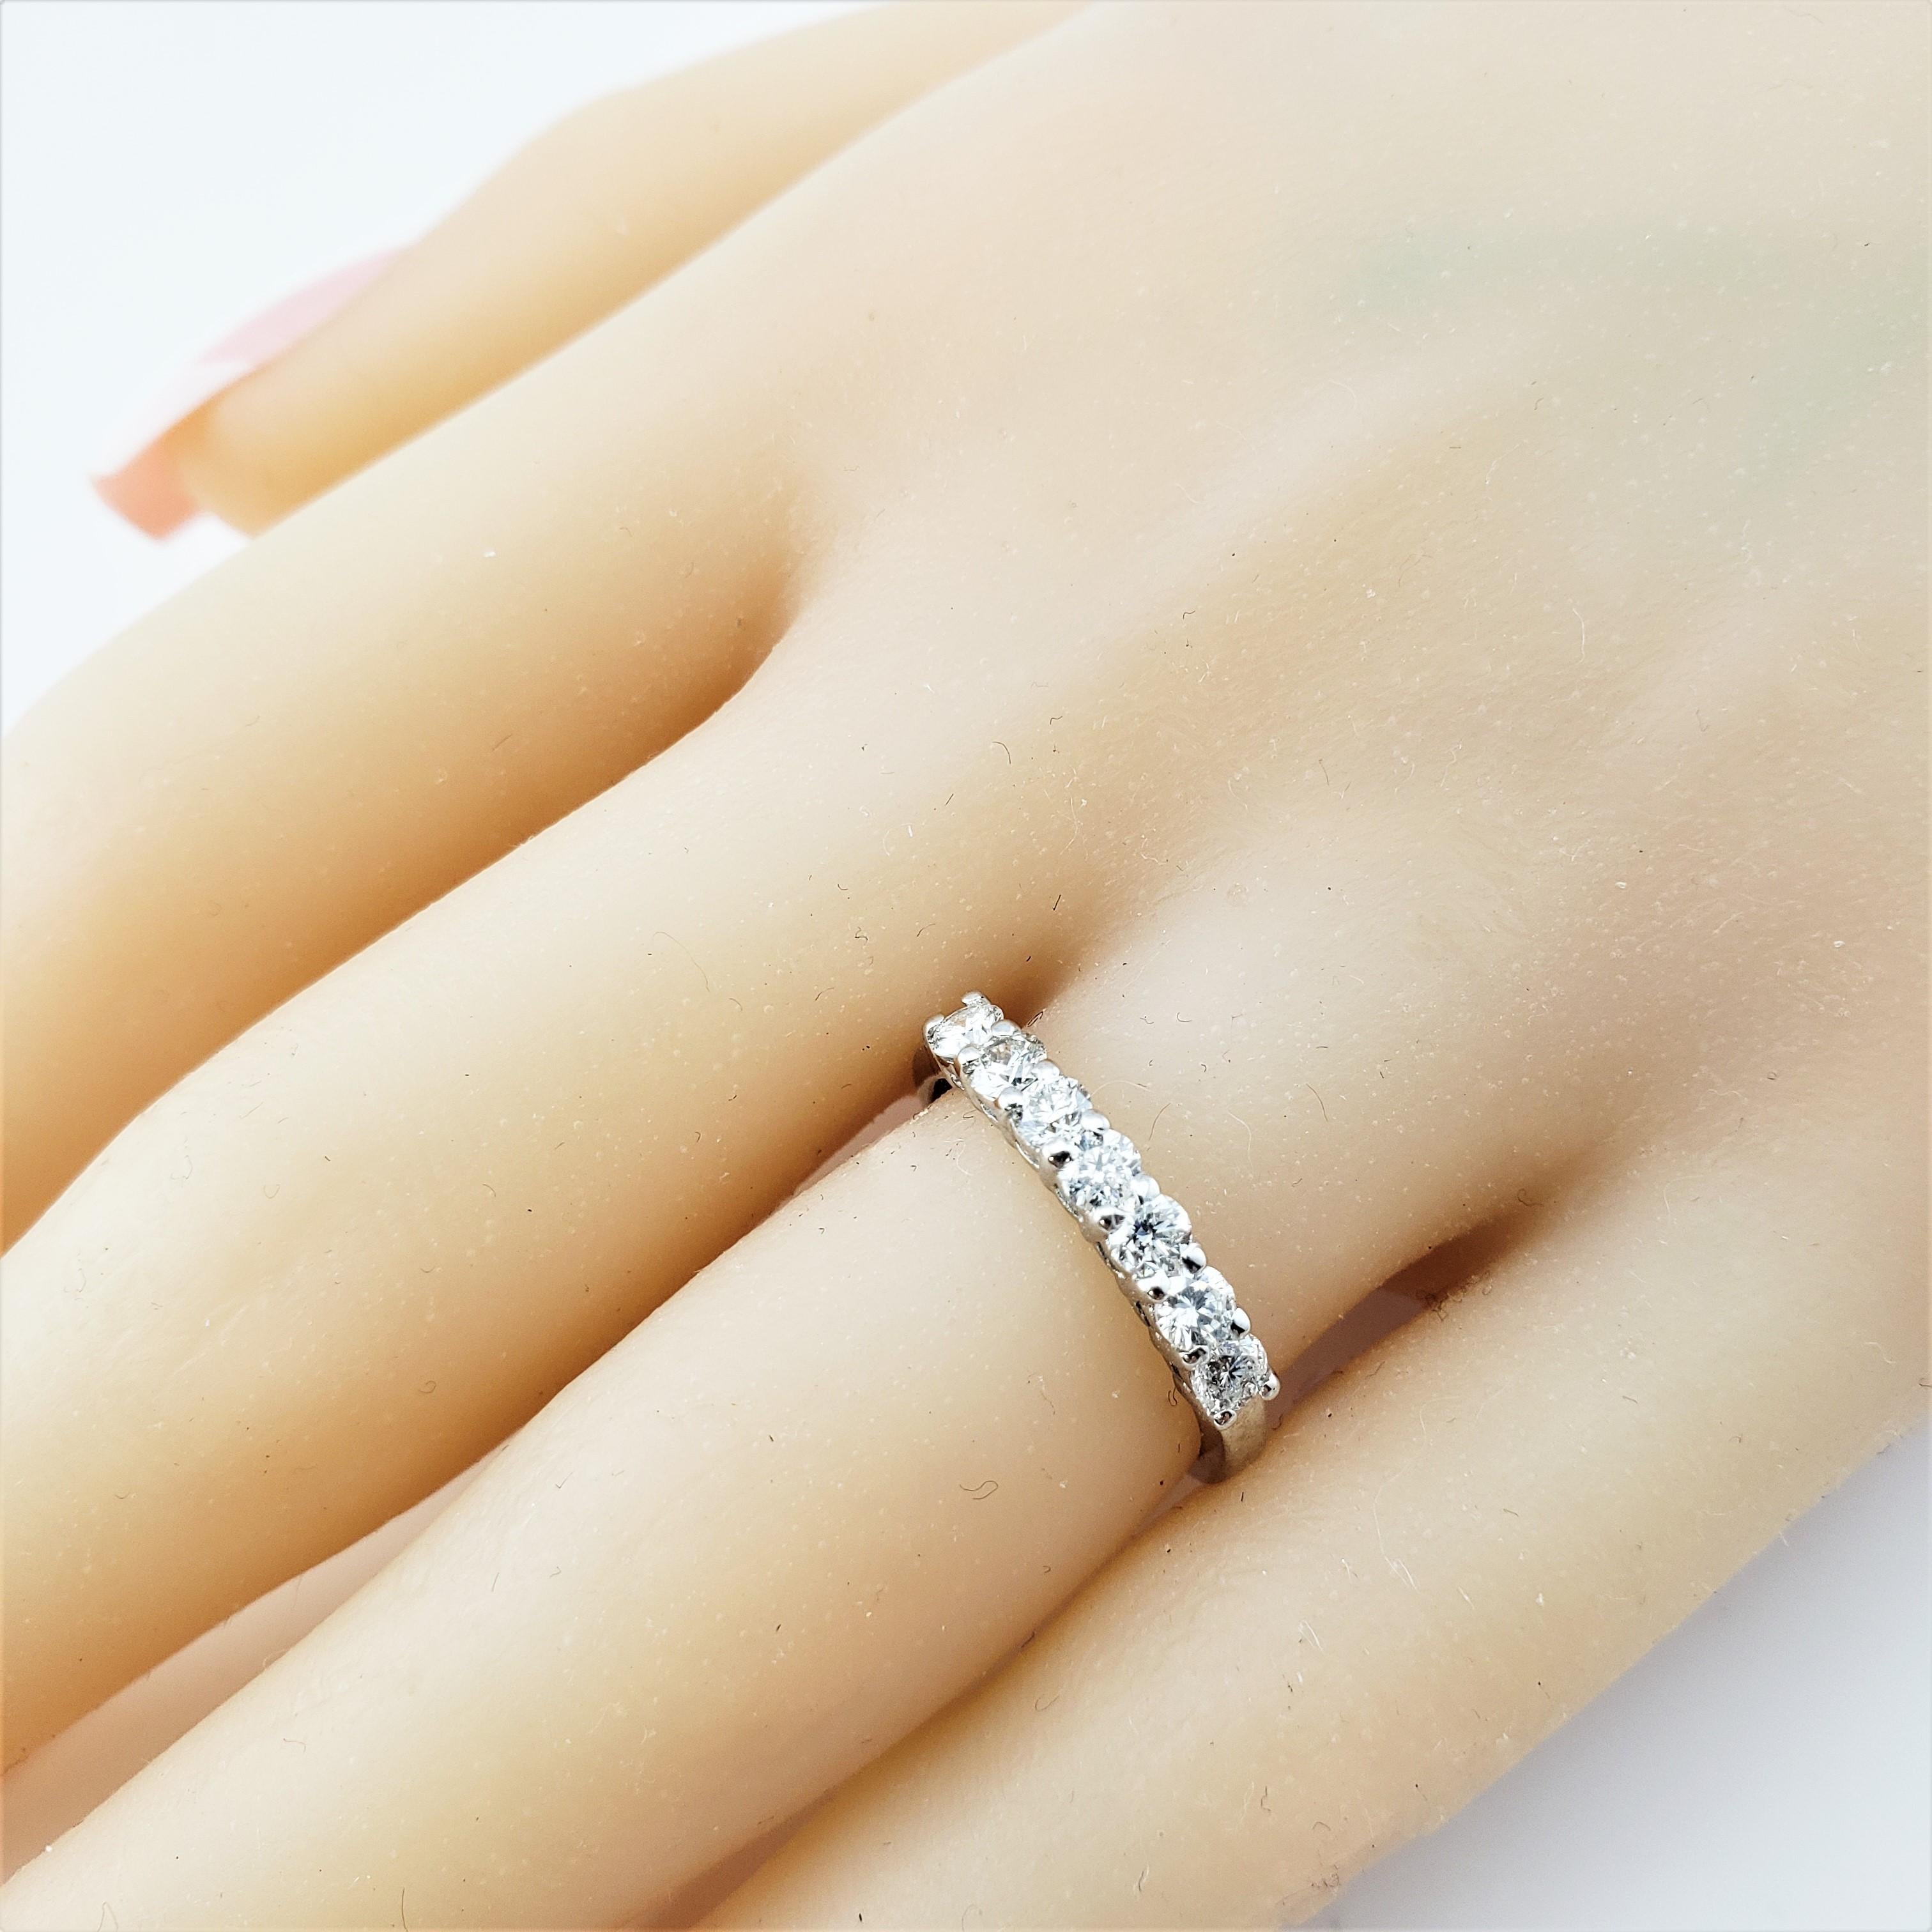 14 Karat White Gold and Diamond Wedding Band Ring 4